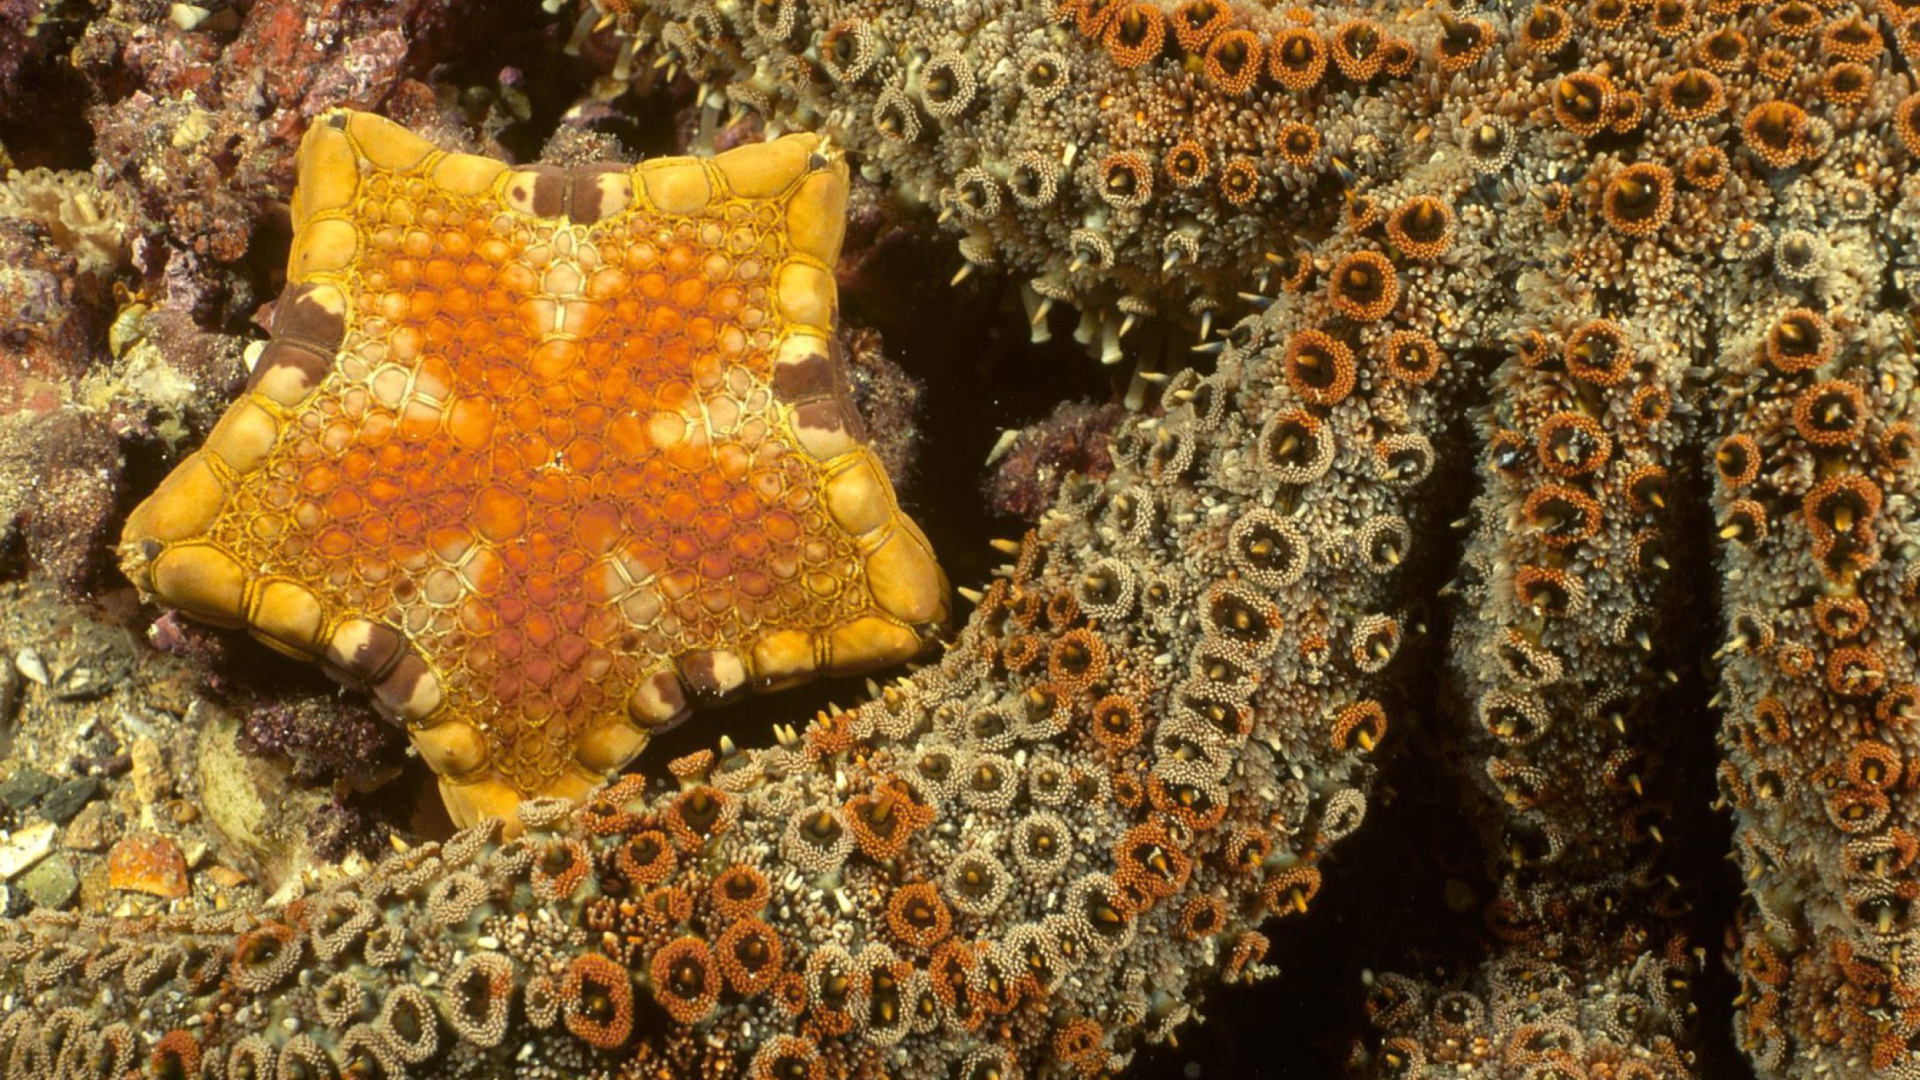 Обои Octopus In Ocean 1920x1080